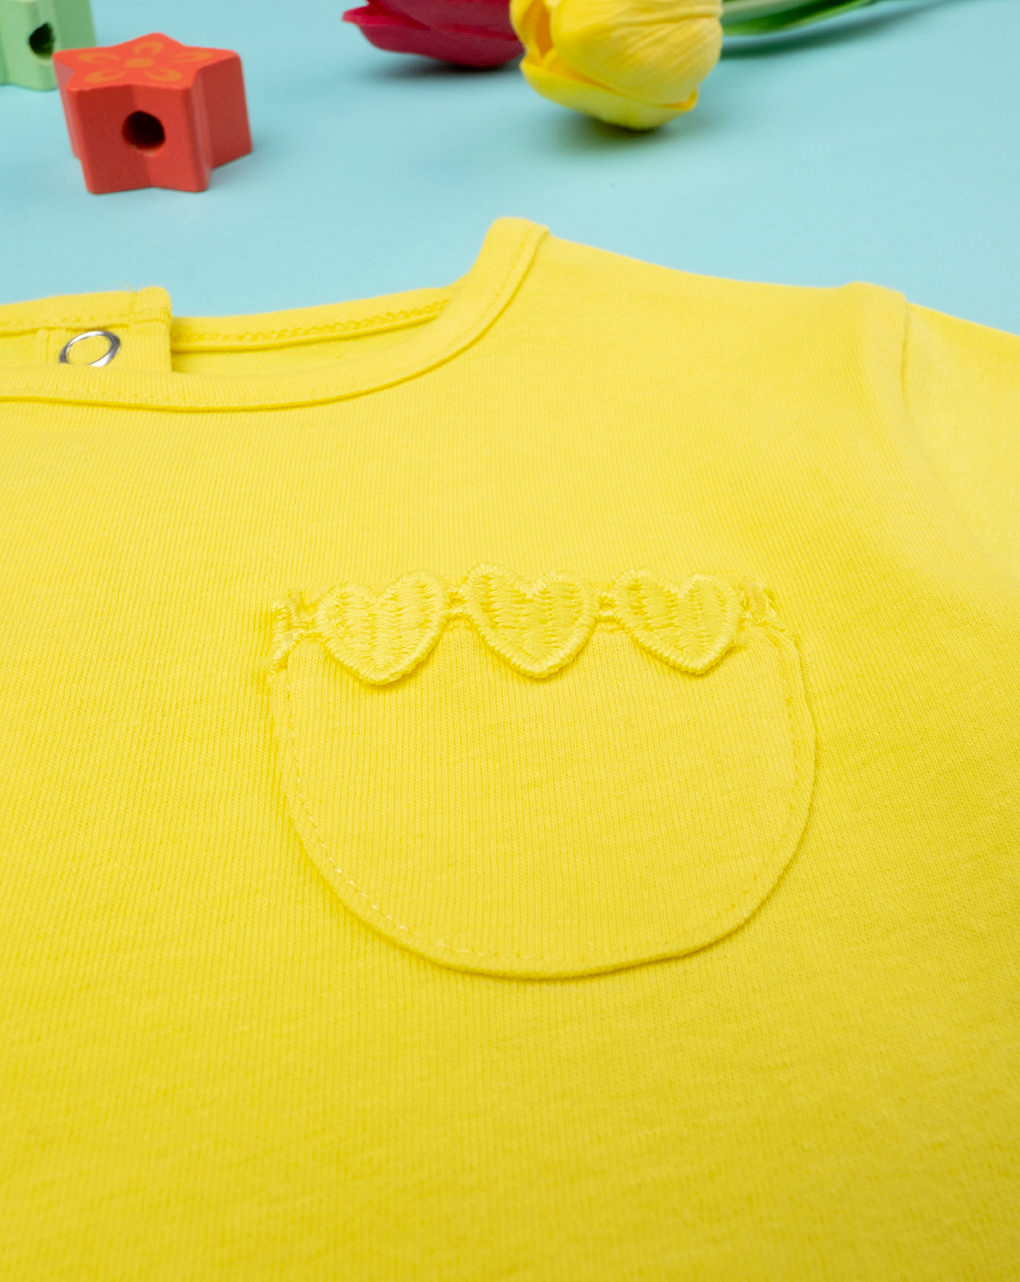 Camiseta Only Kids Wera amarillo manga corta para niña